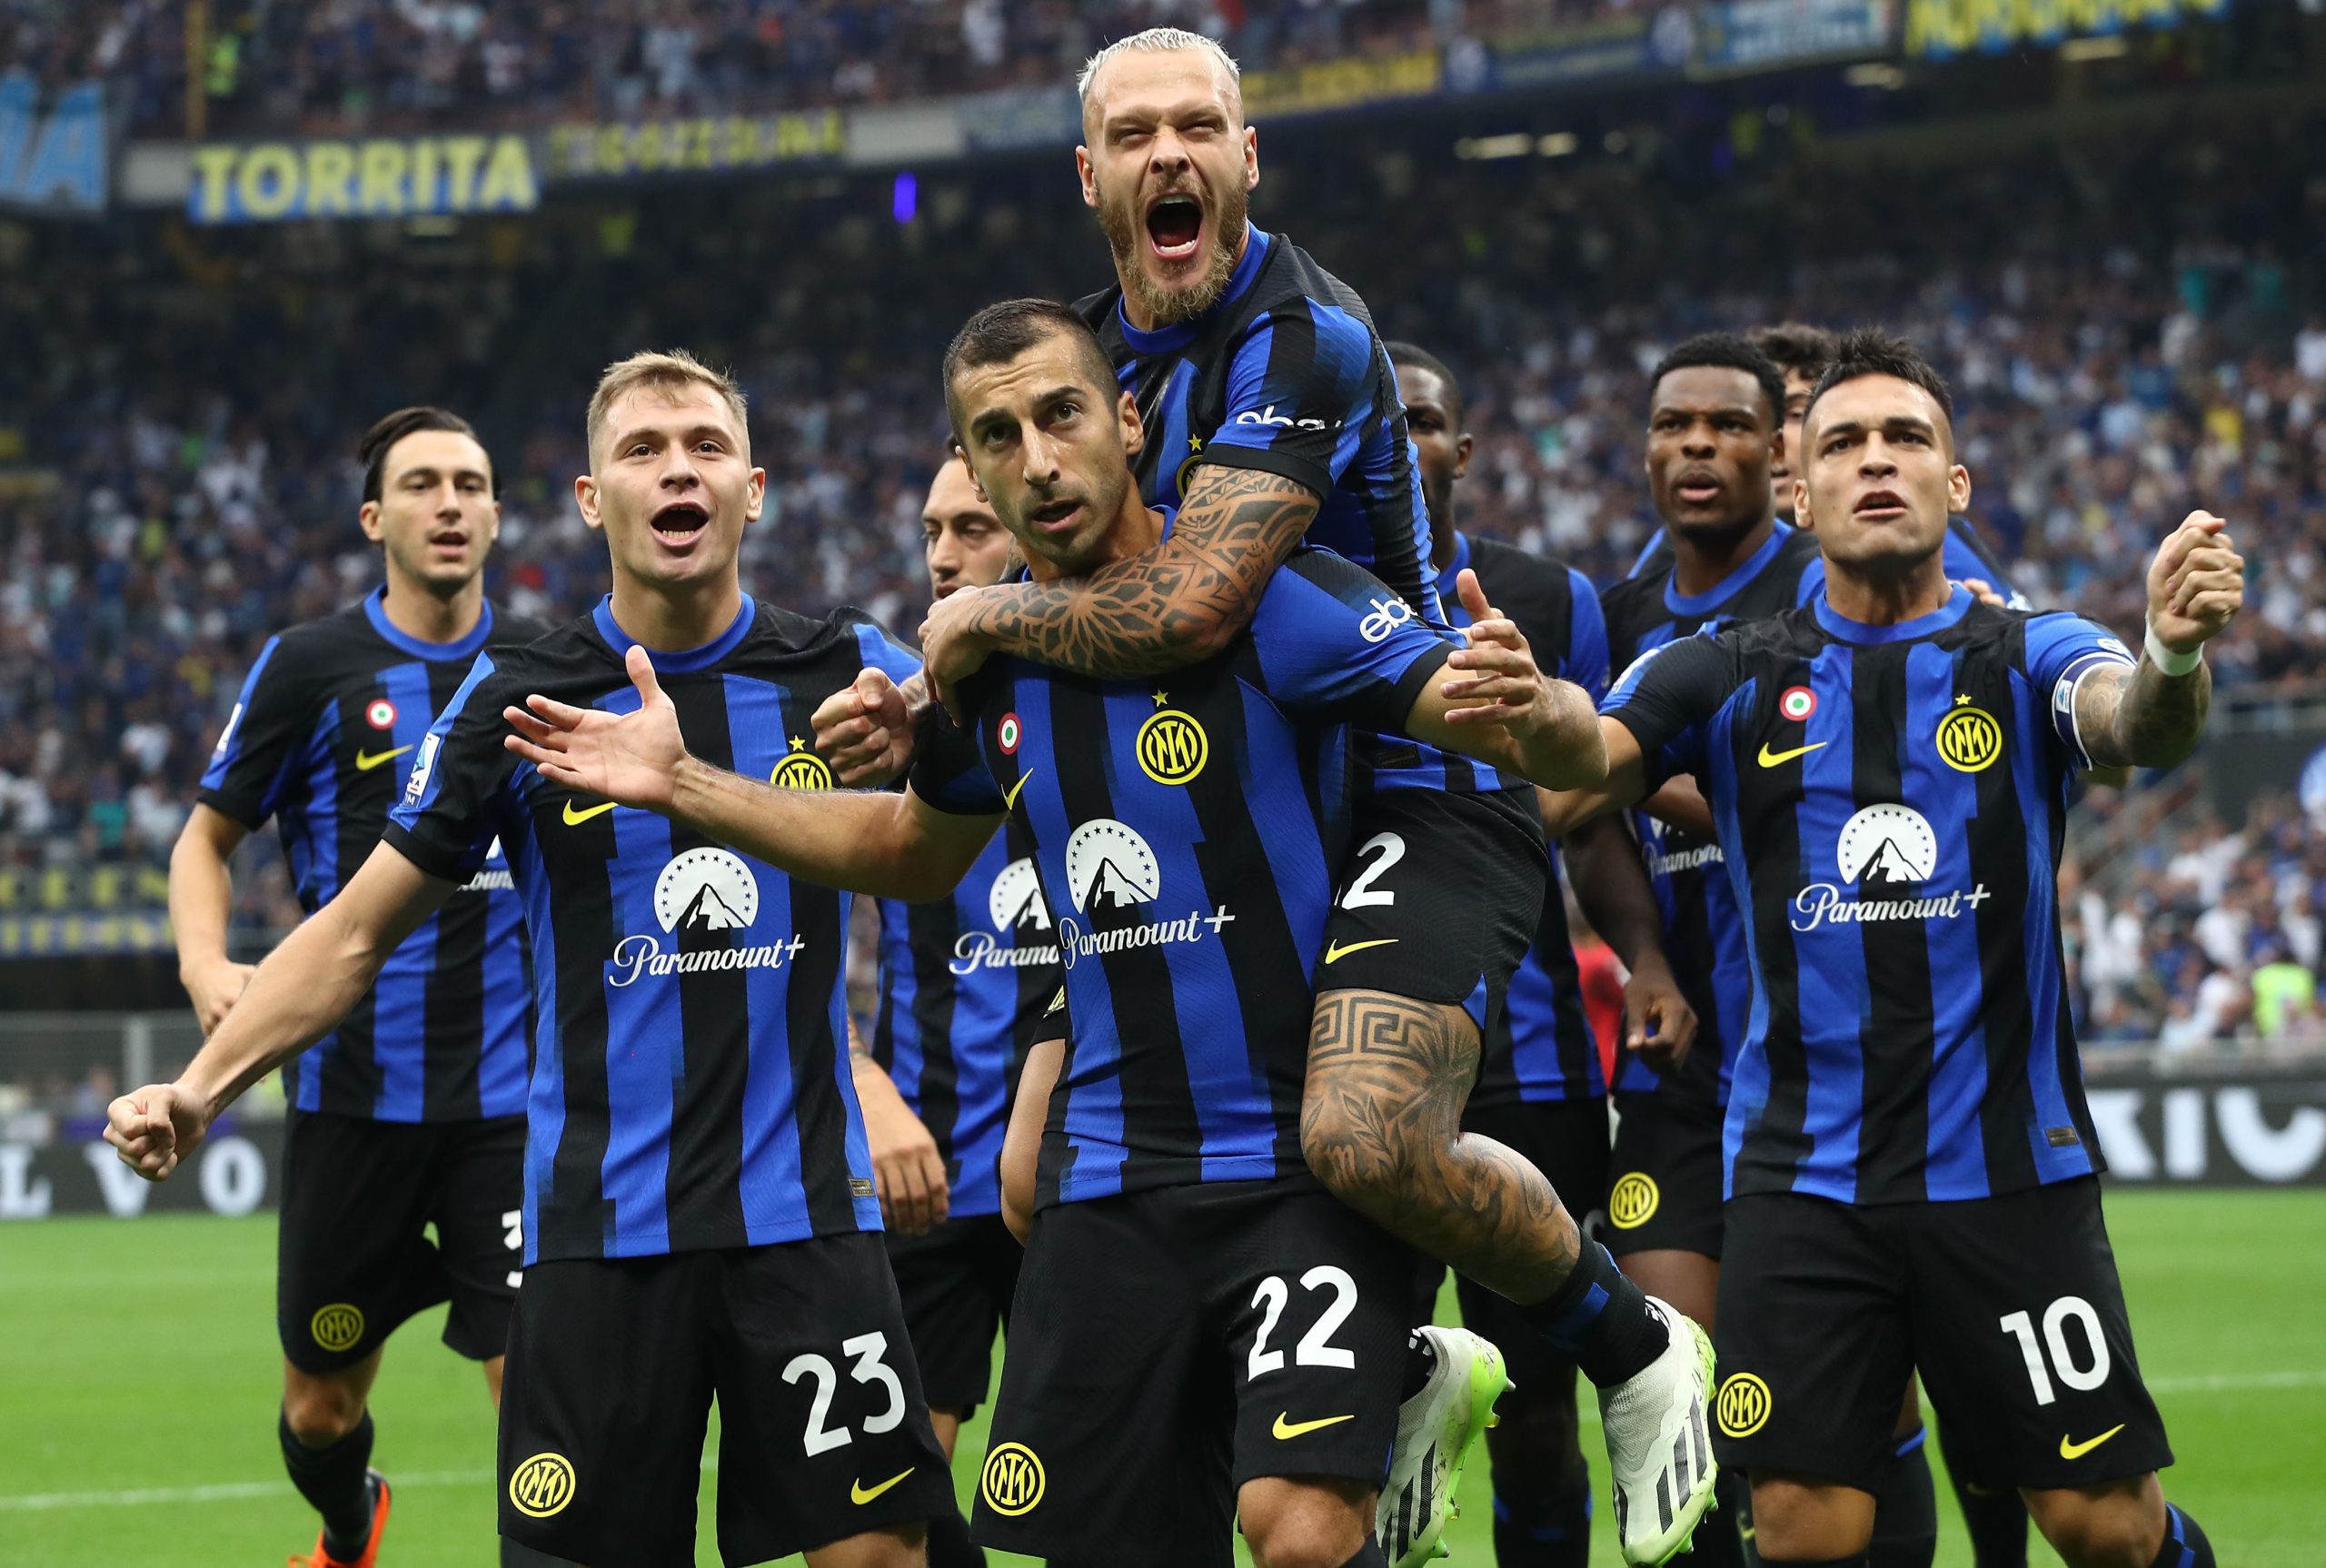 FOTO – Dumfries e Dimarco a quota 100 presenze: l’Inter li celebra!